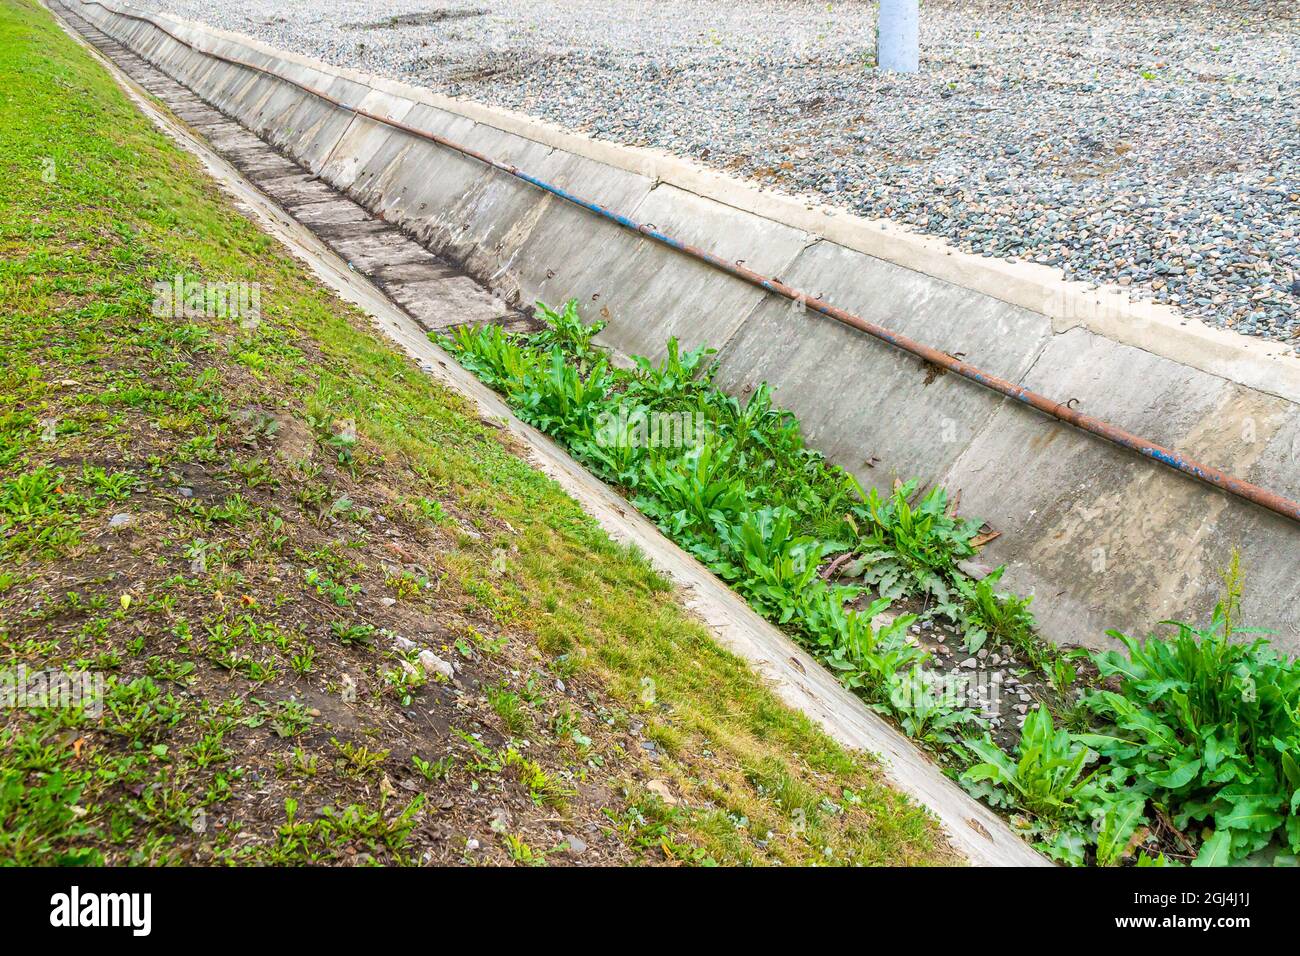 Der Industriekanal zur Ableitung von Regenwasser und zum Schutz vor Hochwasser wurde von dem Gras, mit dem es bewachsen war, zur Hälfte gereinigt Stockfoto